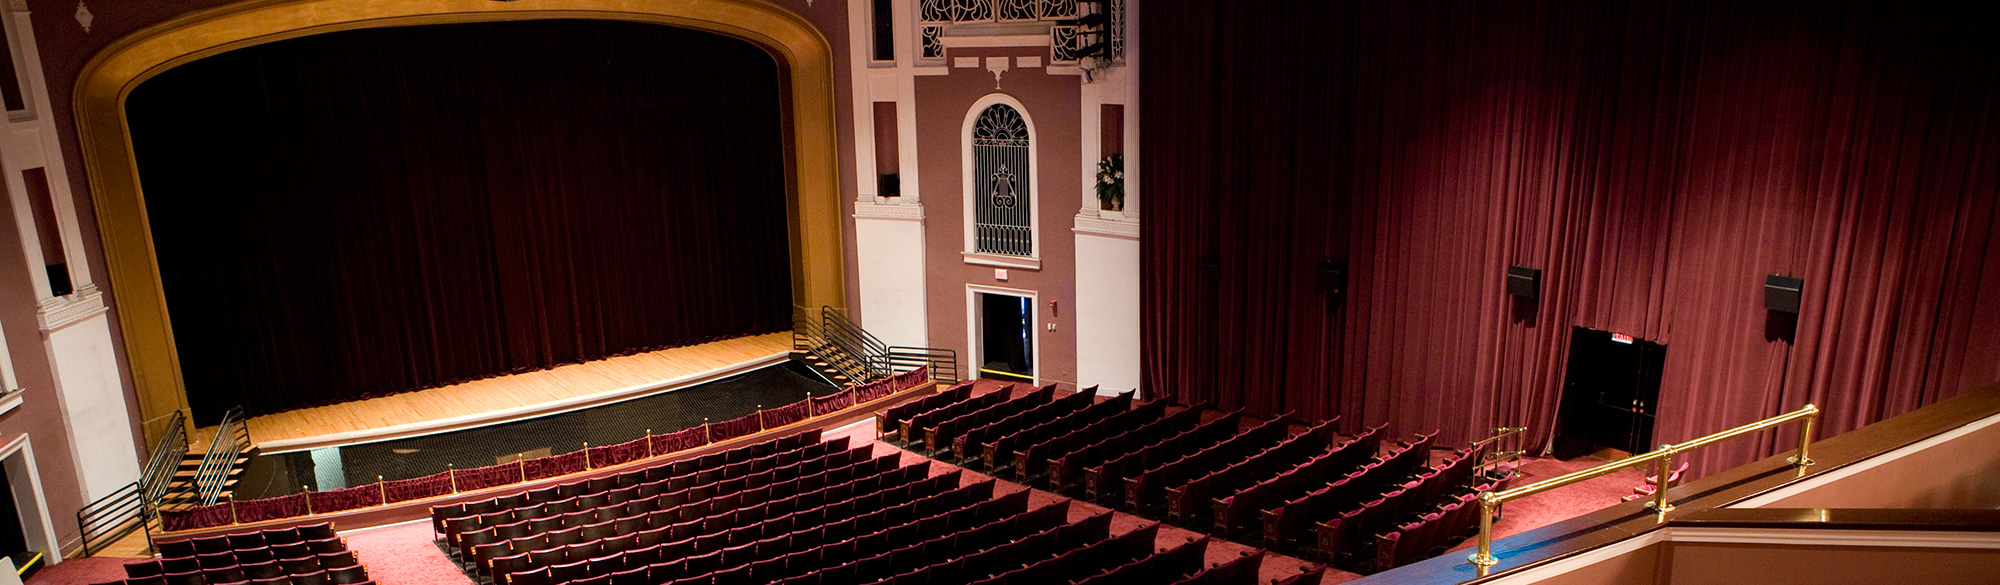 Charleston City Music Hall Seating Chart